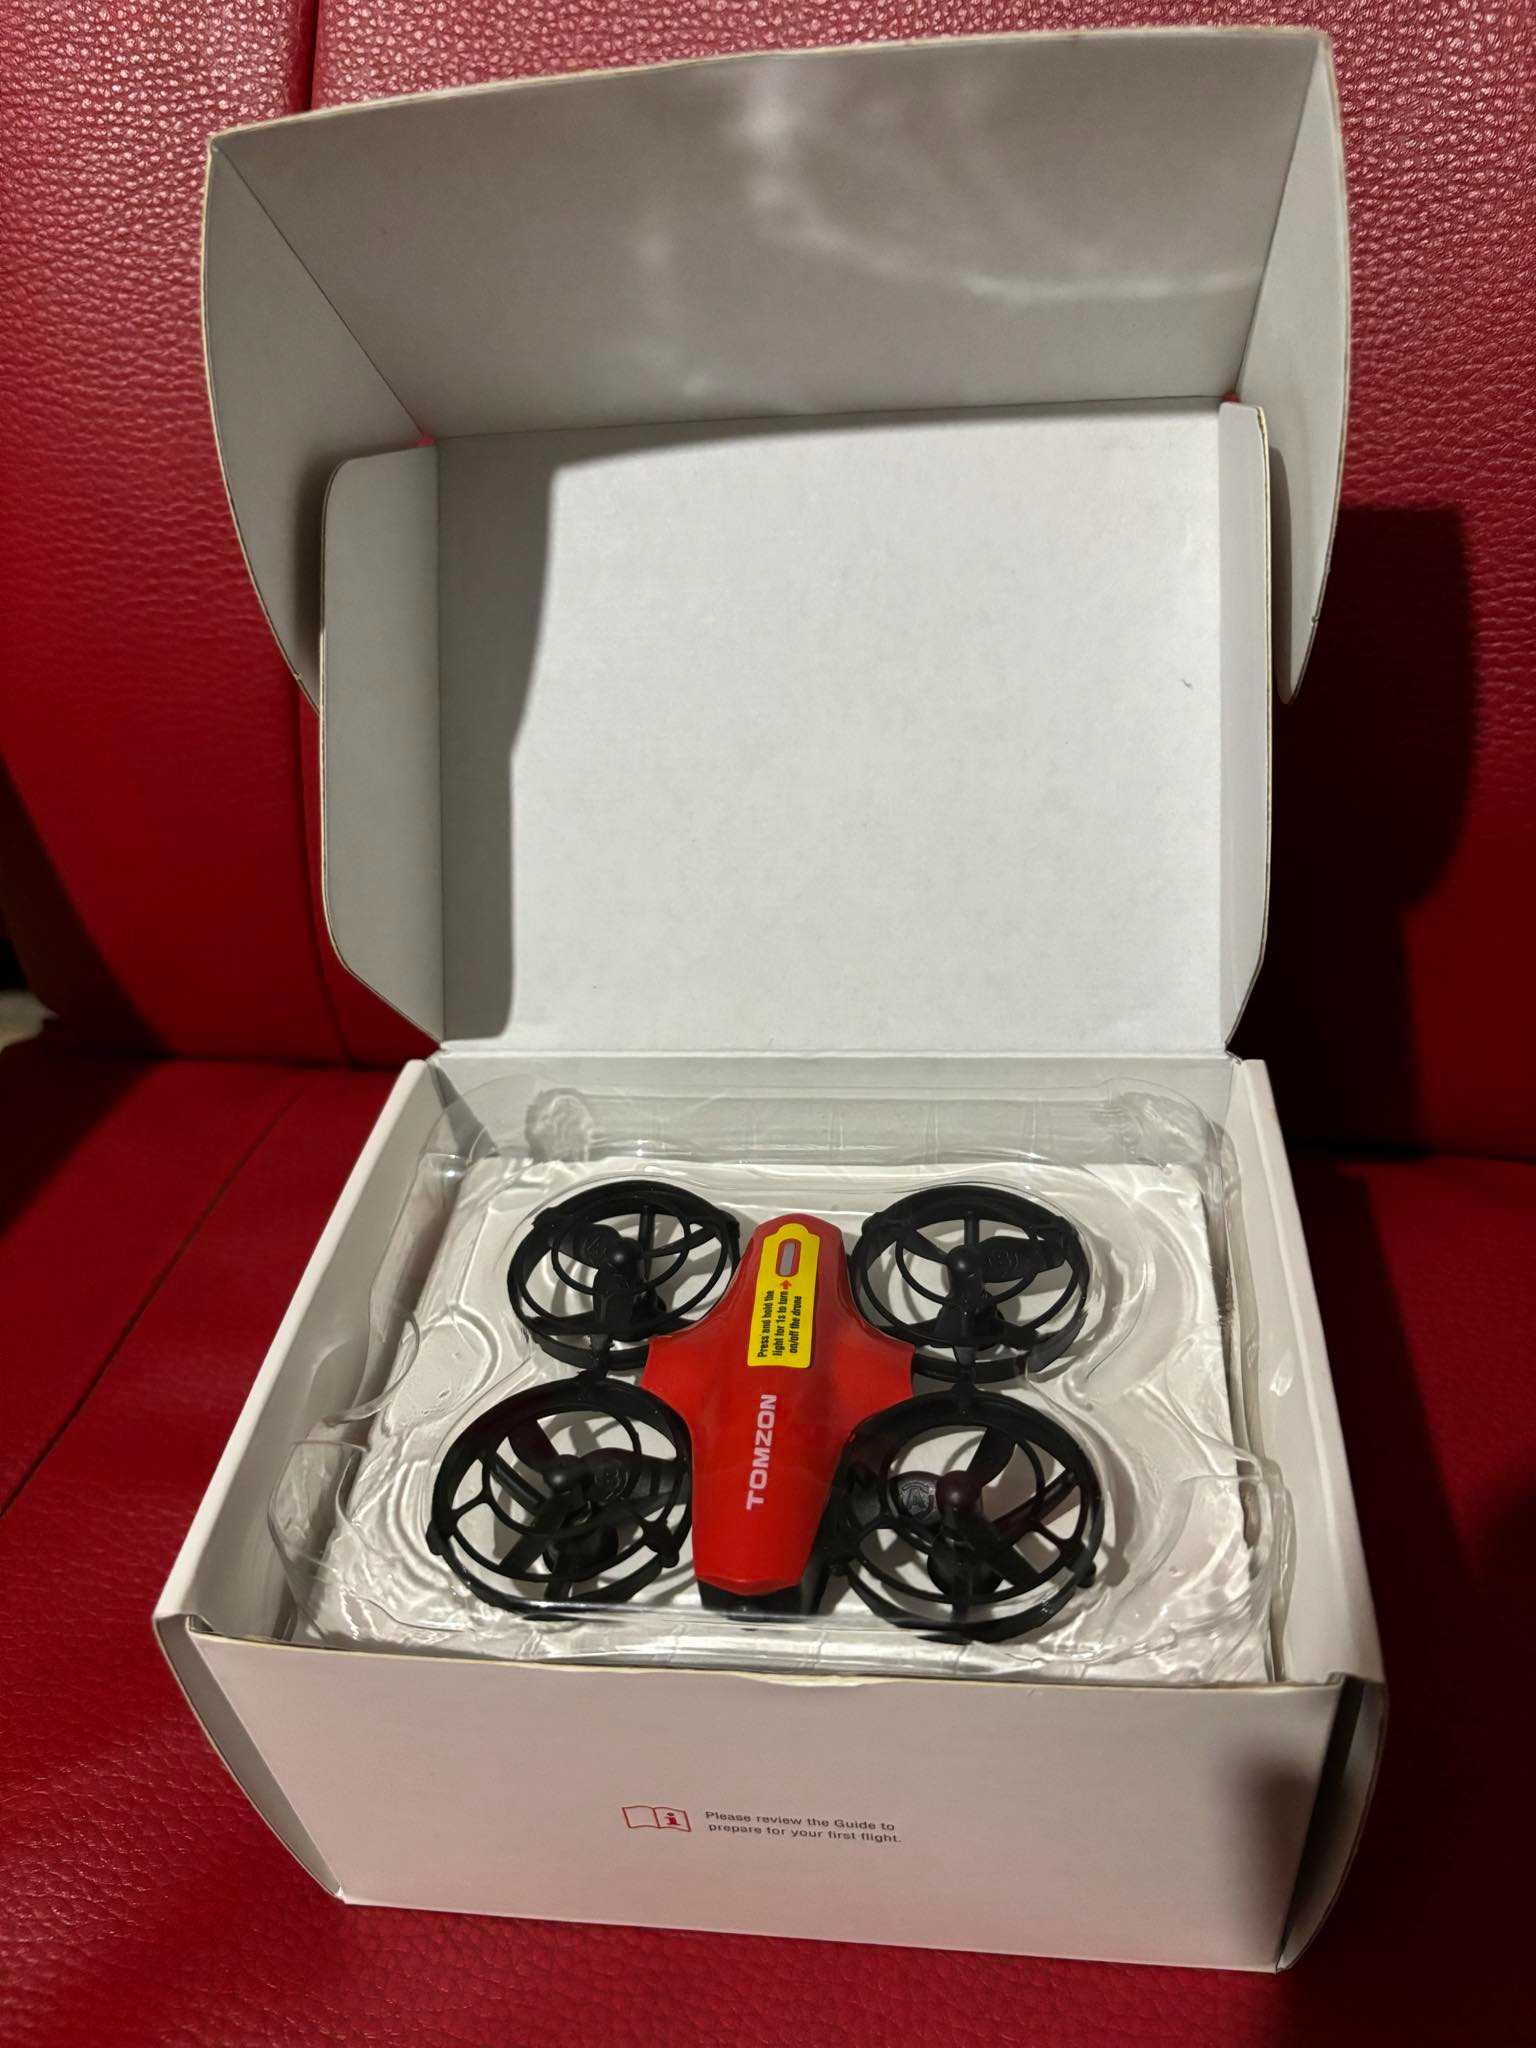 Dron Tomzon czerwony idealny do nauki latania dronem